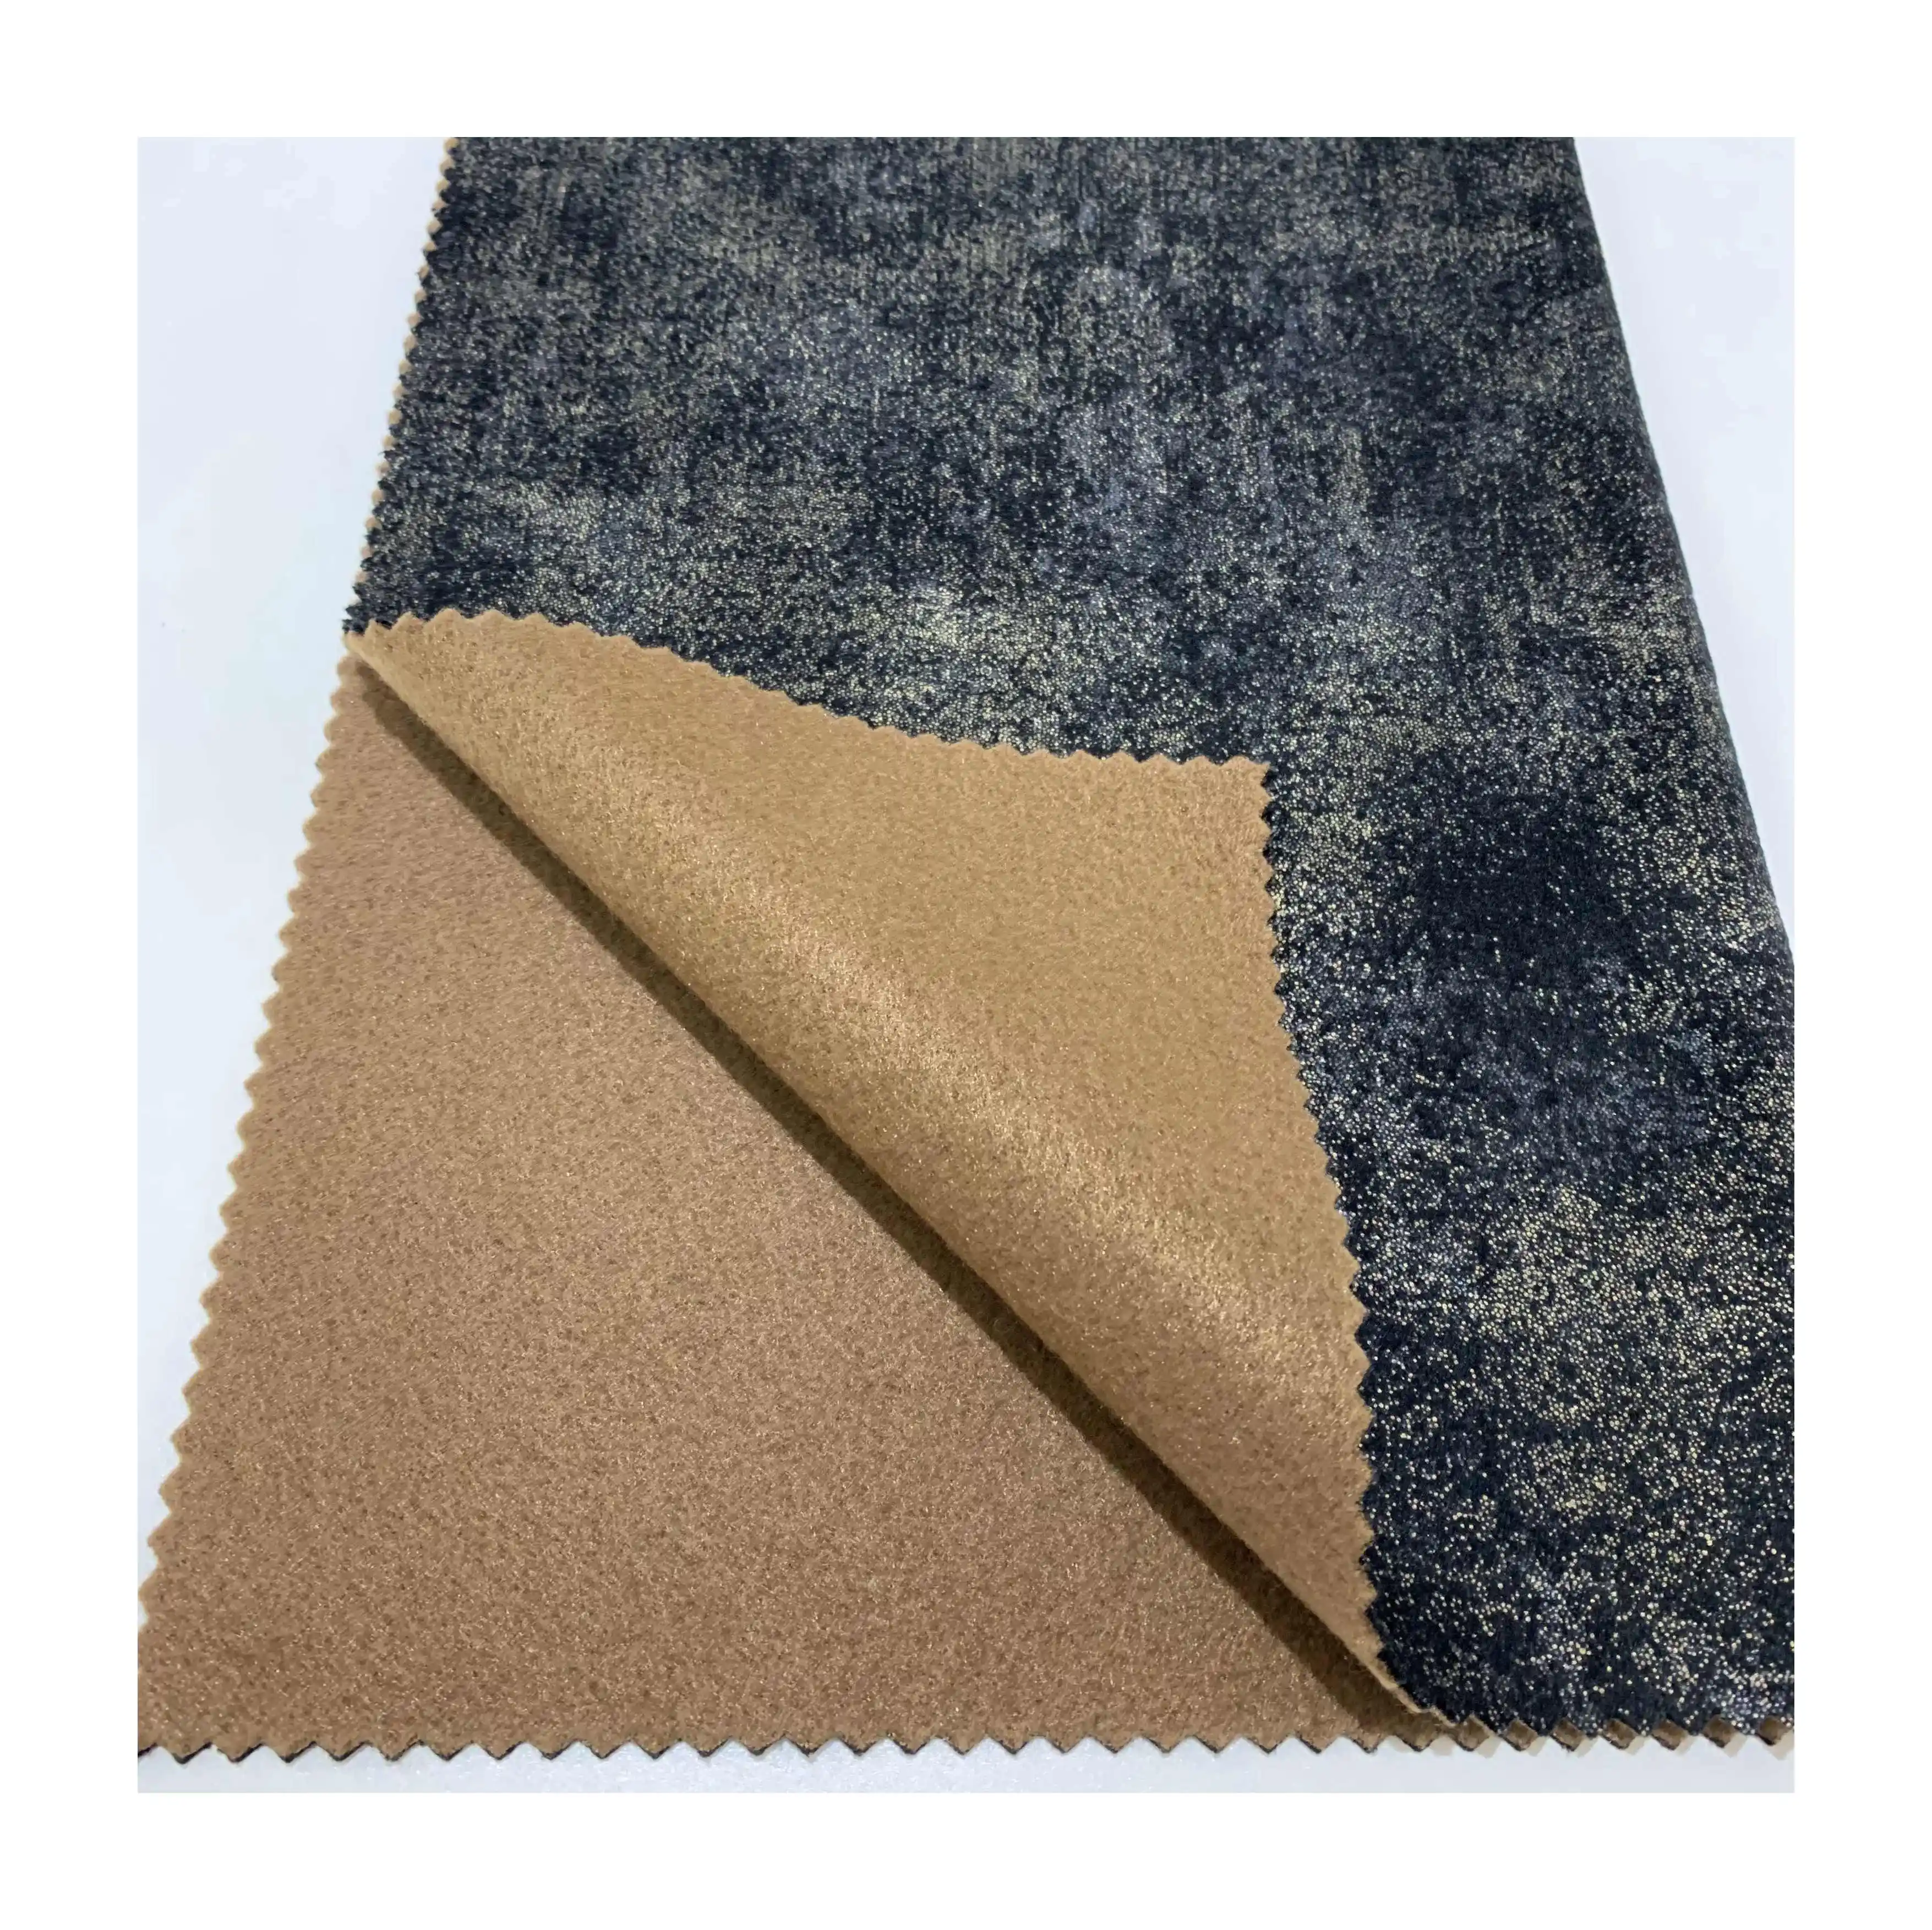 Fantastique velours hollandais Double bronzage pour tissu de canapé et textile Hometextile